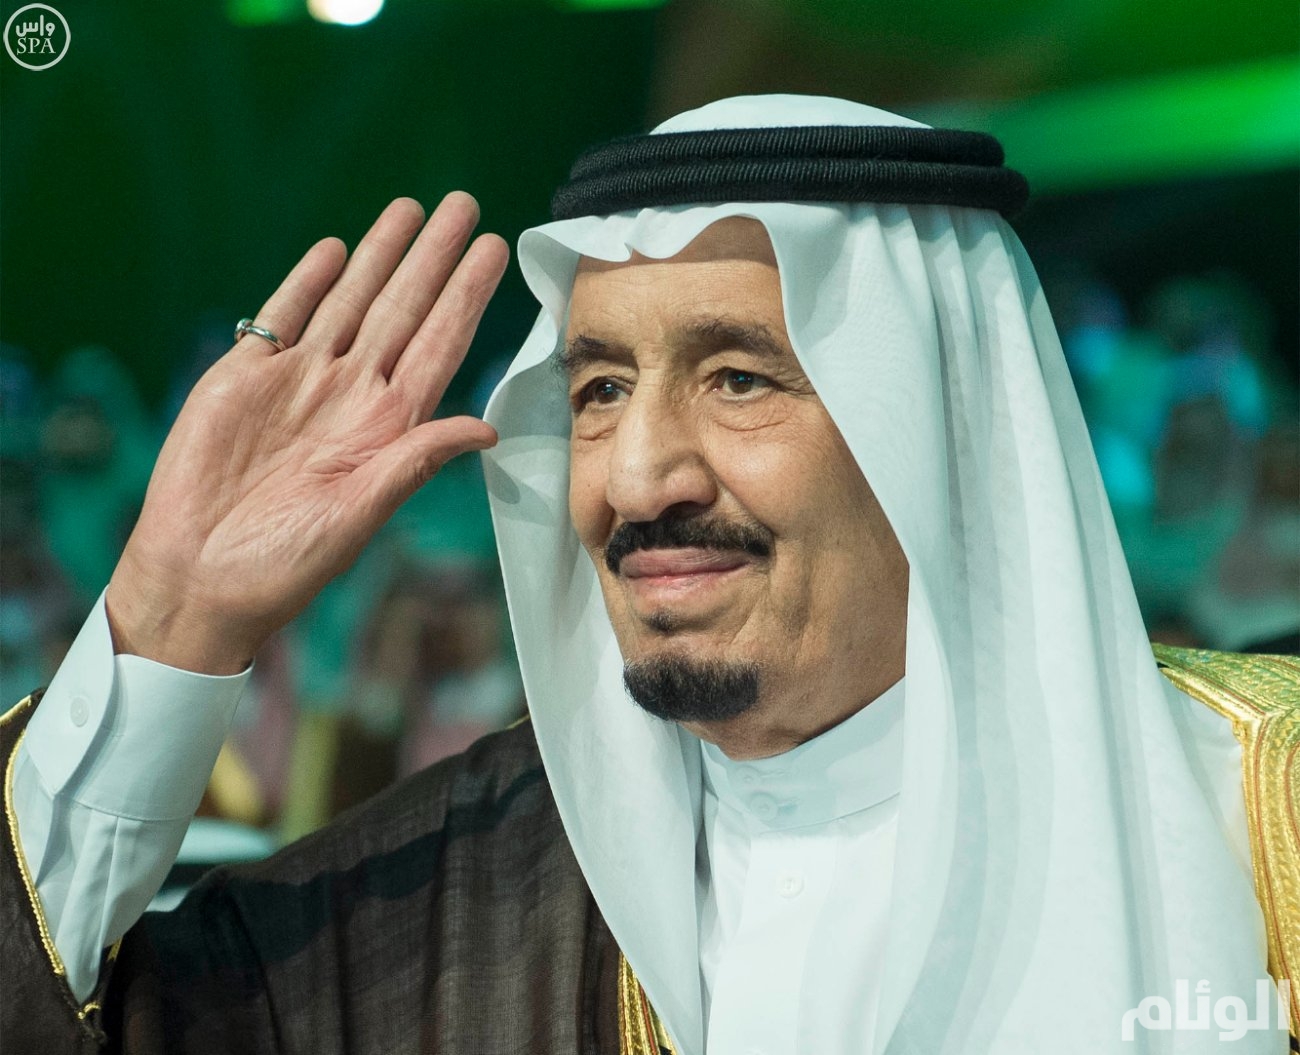 السعودية تعلن "نجاح" جهود الملك سلمان لإعادة فتح الأقصى